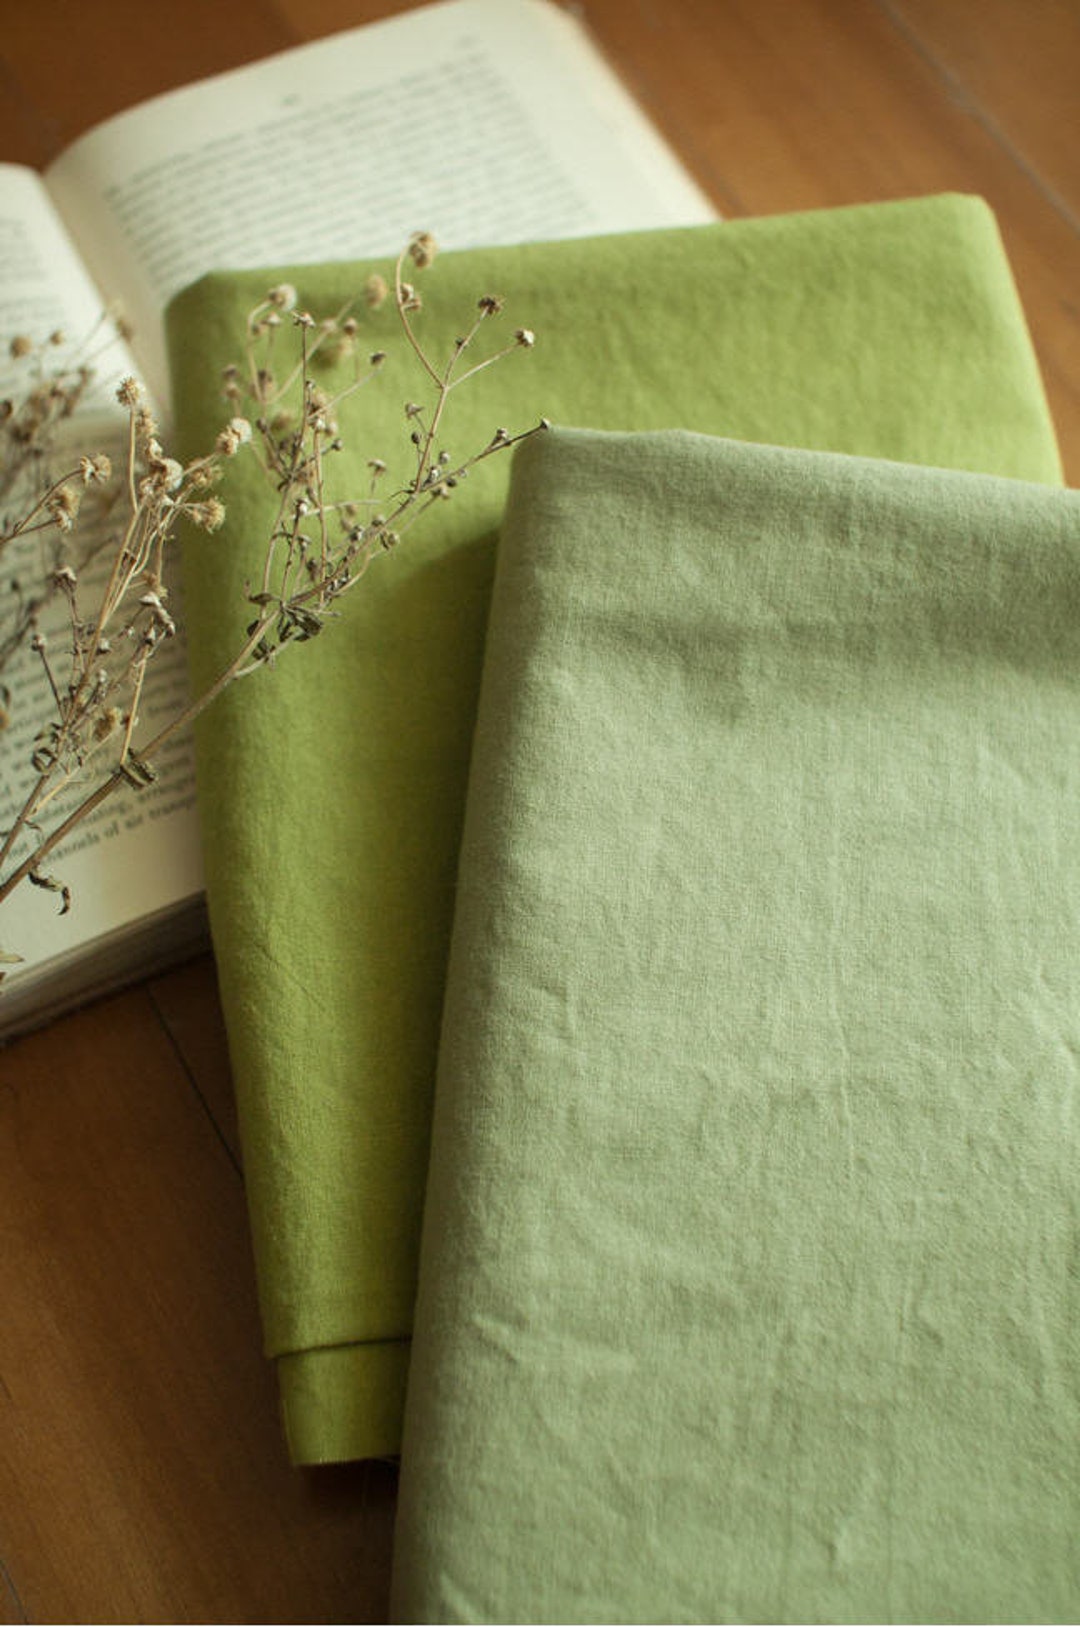 Tela verde, tela verde hiedra, tiro de algodón, tela sólida verde, tela de  algodón sólido, básicos de algodón, por Benartex, 9636-45